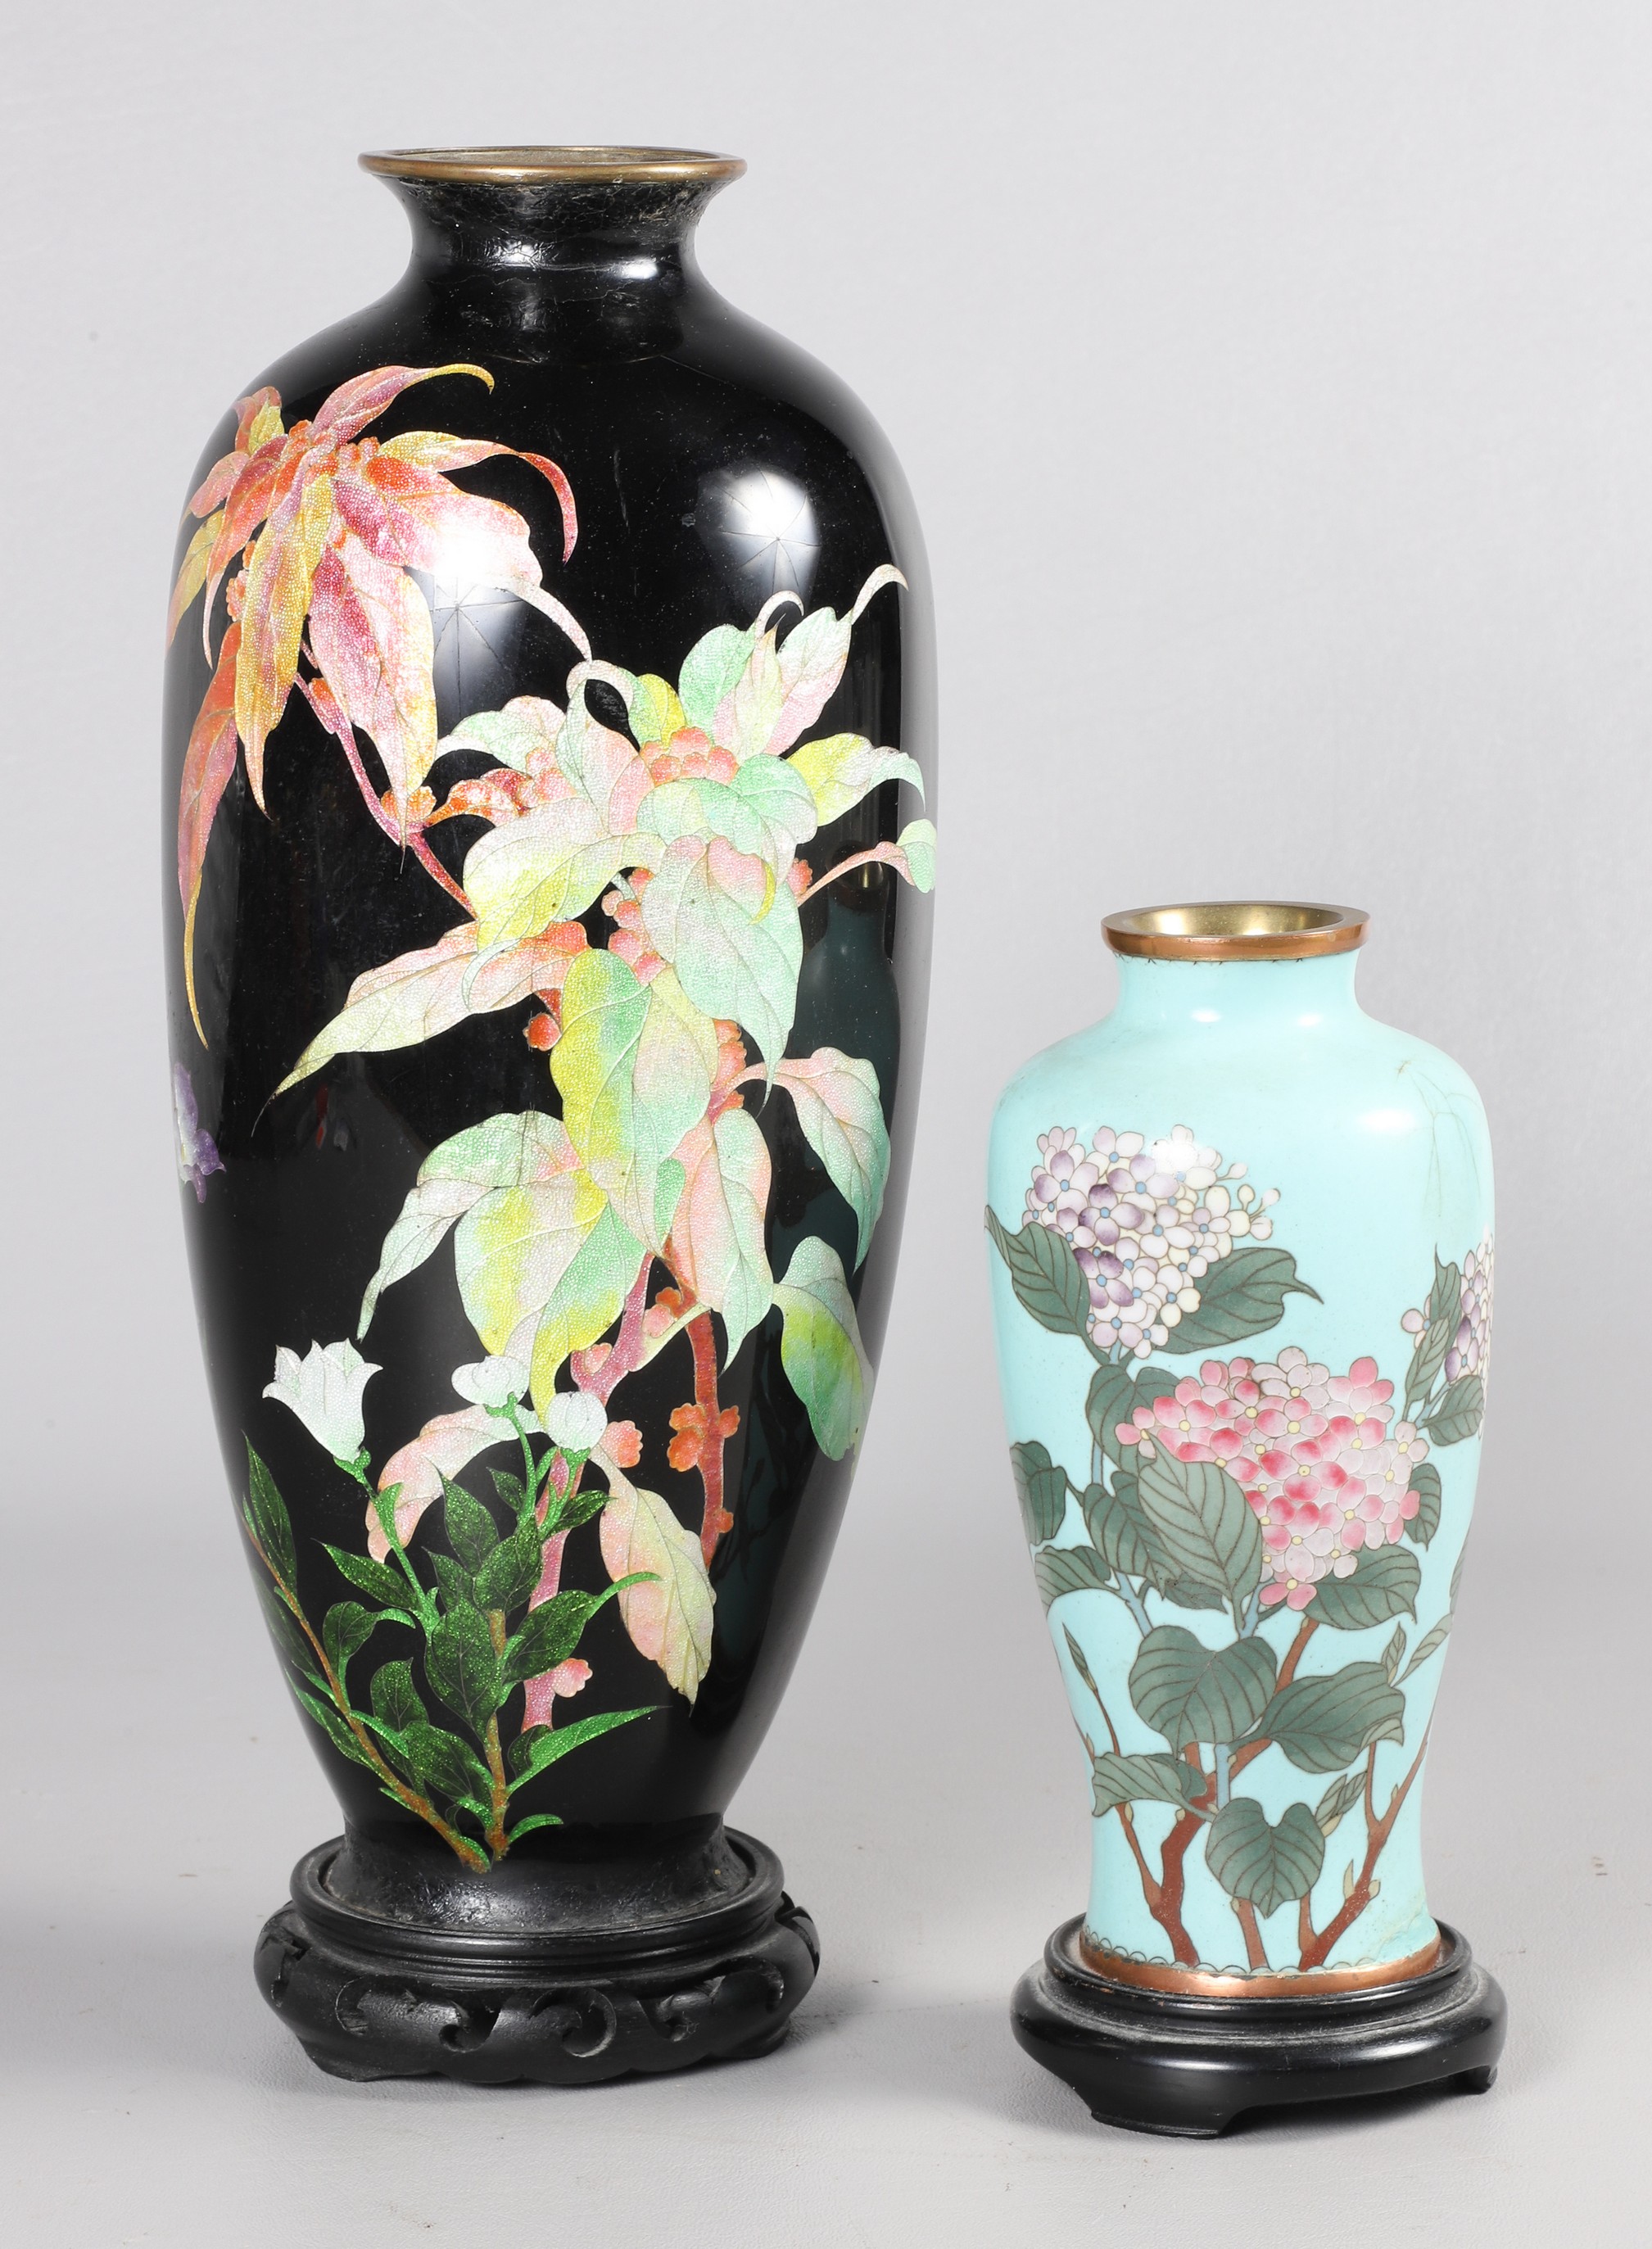  2 Japanese cloisonne enamel vases  2e08ca